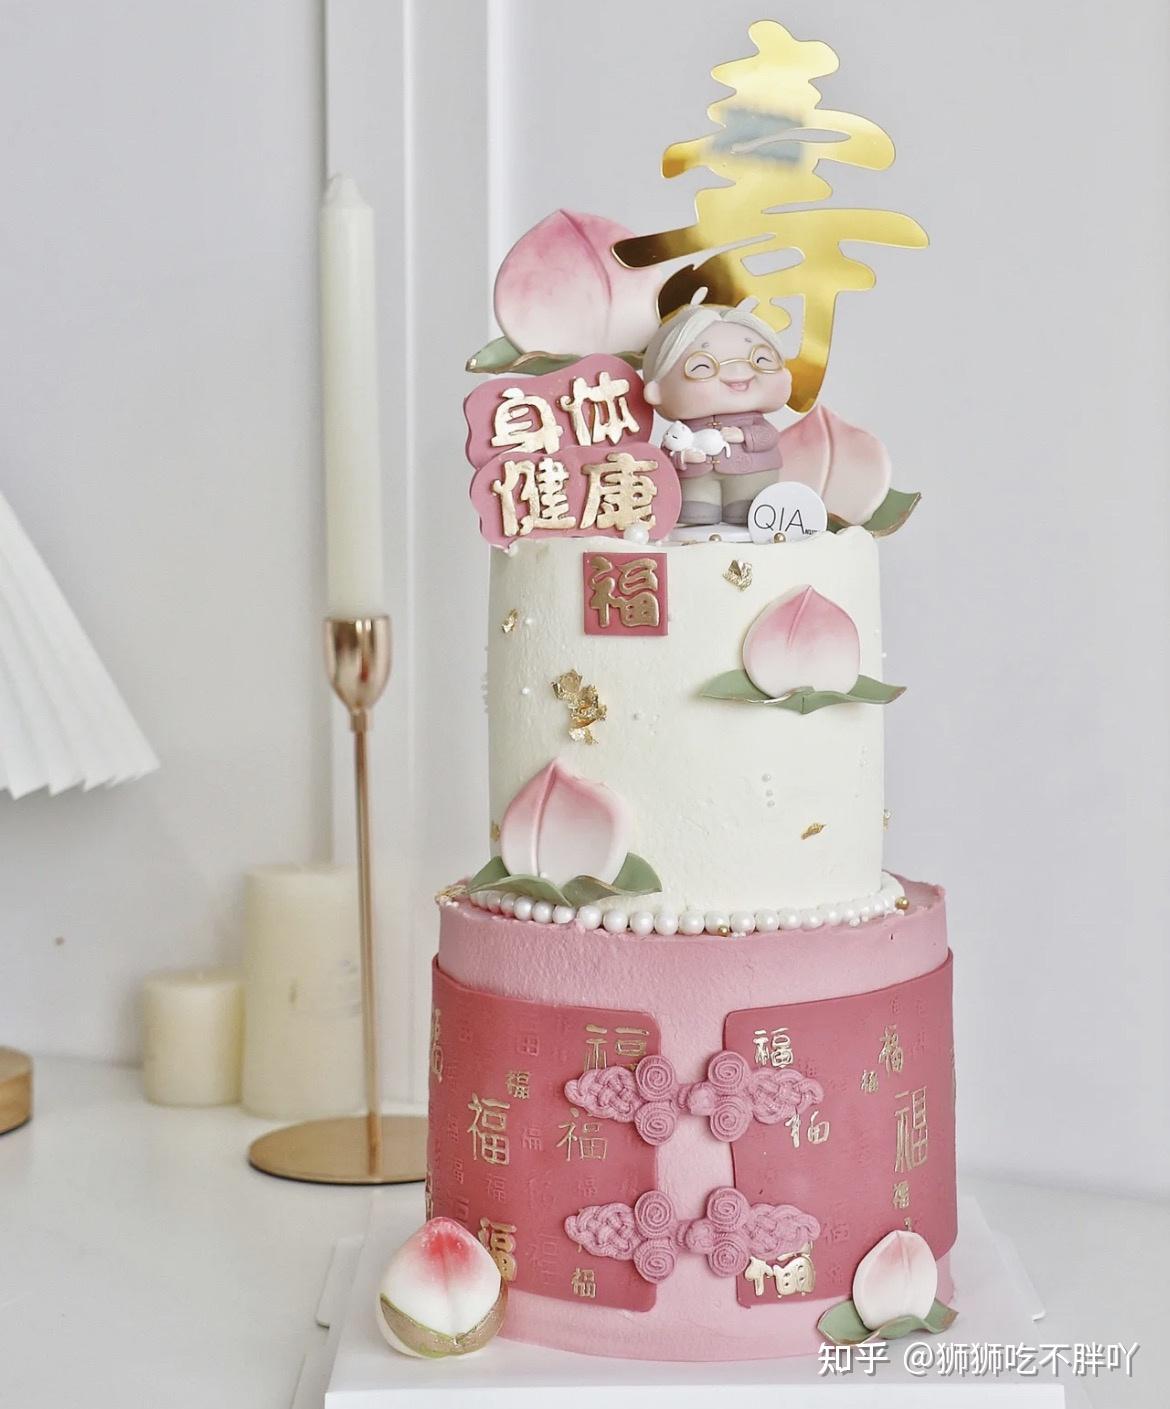 产品中心|生日蛋糕,祝寿蛋糕,节日蛋糕,月饼,西点,结婚蛋糕|红房子蛋糕